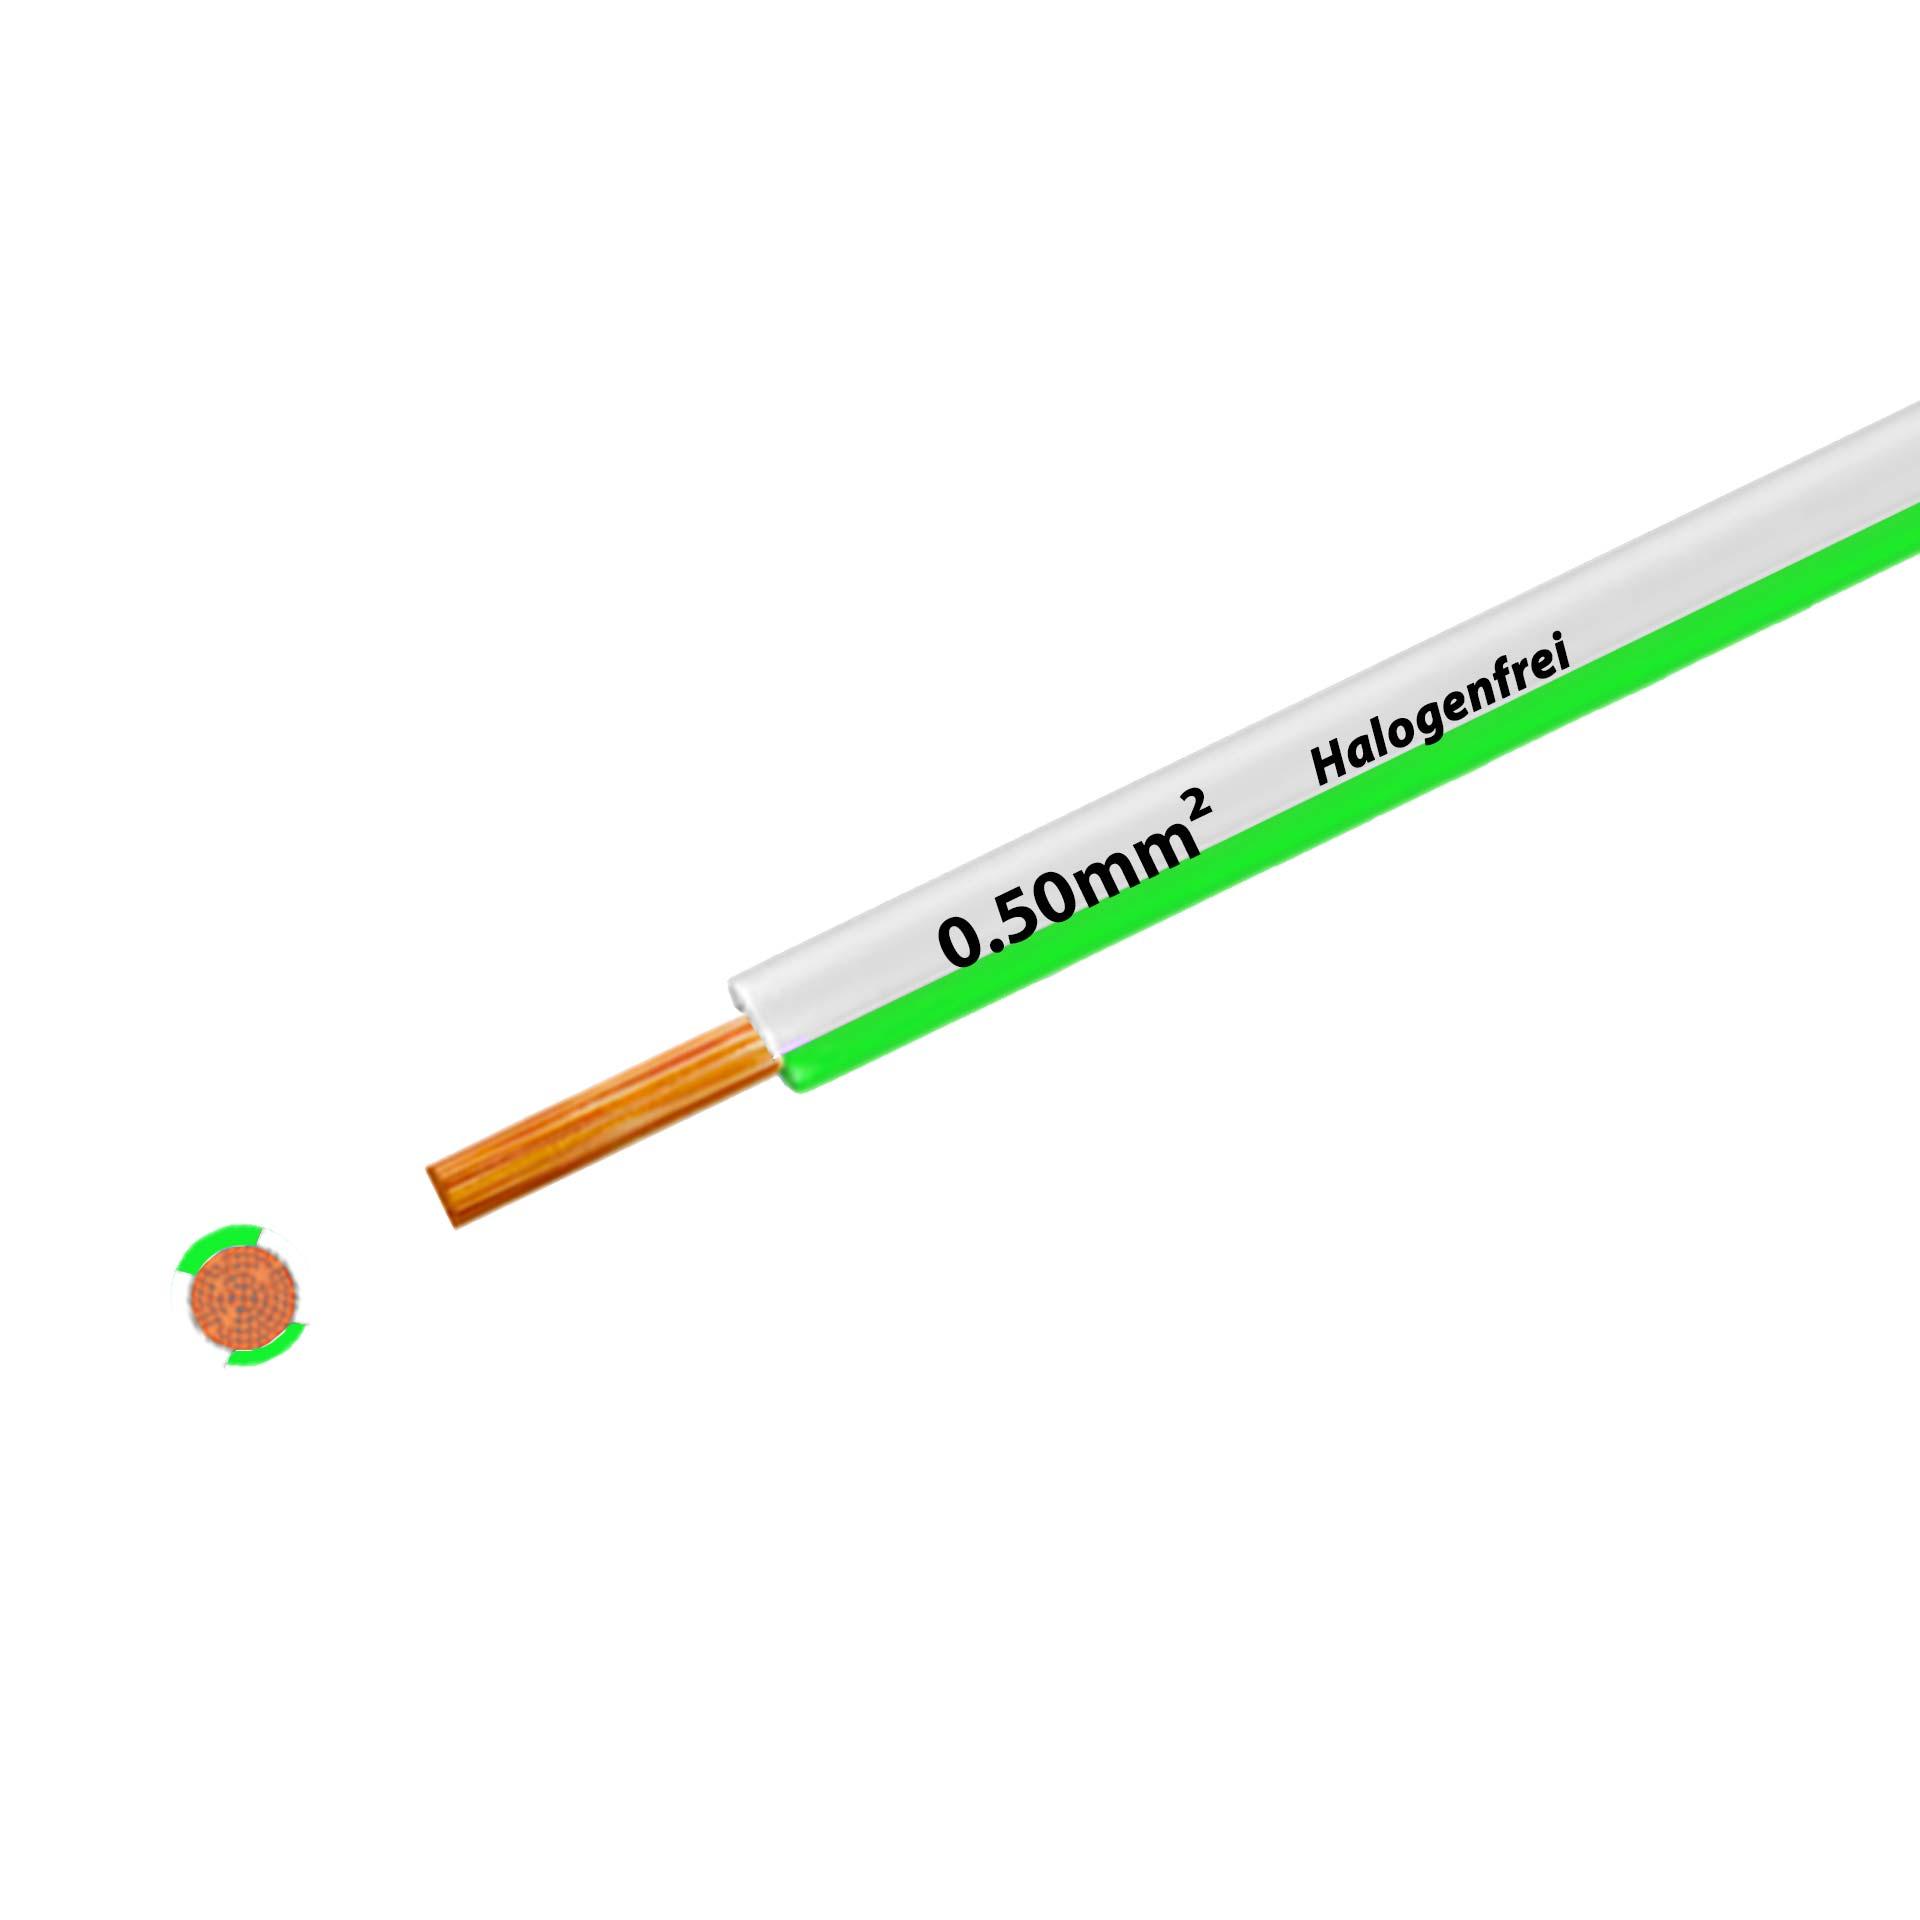 Litze halogenfrei 90° C , 500V, 0.50mm2, weiss-grün (RAL 9010/6018), auf Kunststoffrolle